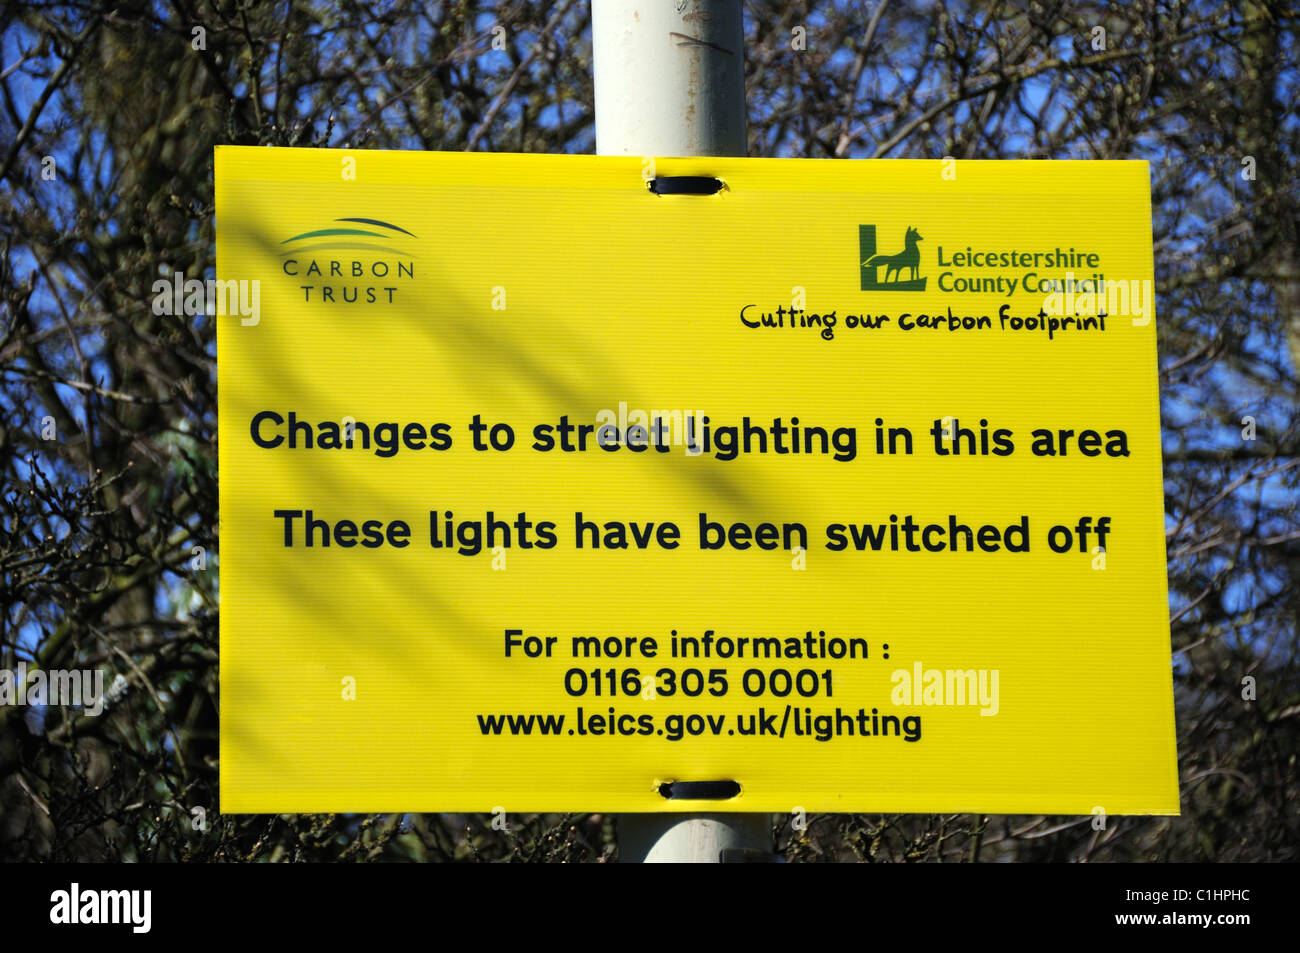 Guardar carbono o ahorrar dinero? Ambos, al parecer! Firmar apagado en un poste de la luz por la A50 en Groby, Leicestershire, Inglaterra Foto de stock